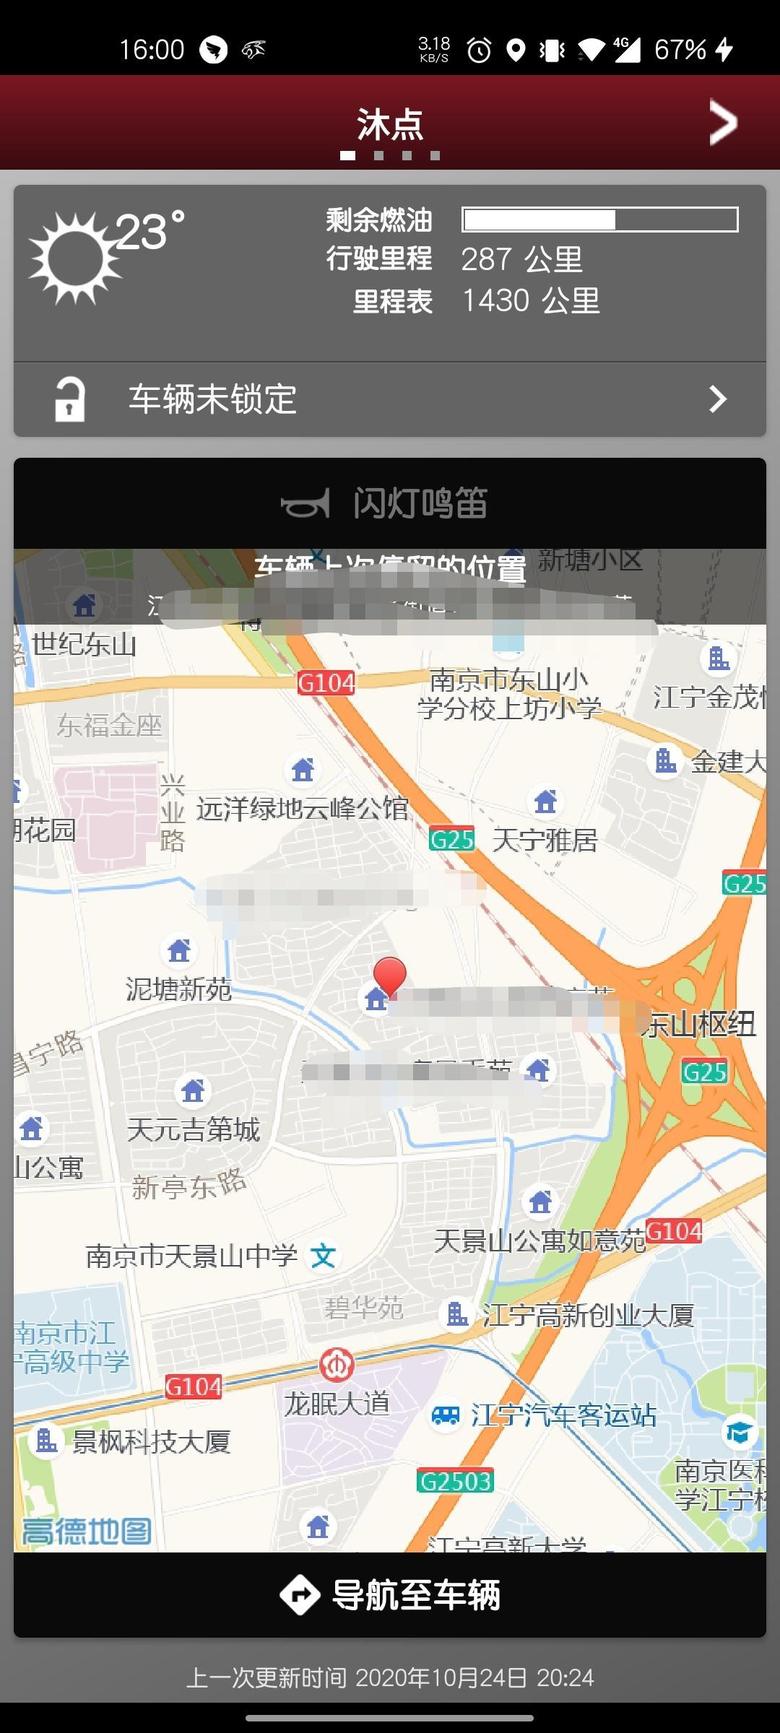 捷豹xel 最近有手机智能驭领app信息不更新的吗？我的一直停留在10月24号，后面开的路程一直不更新了。。